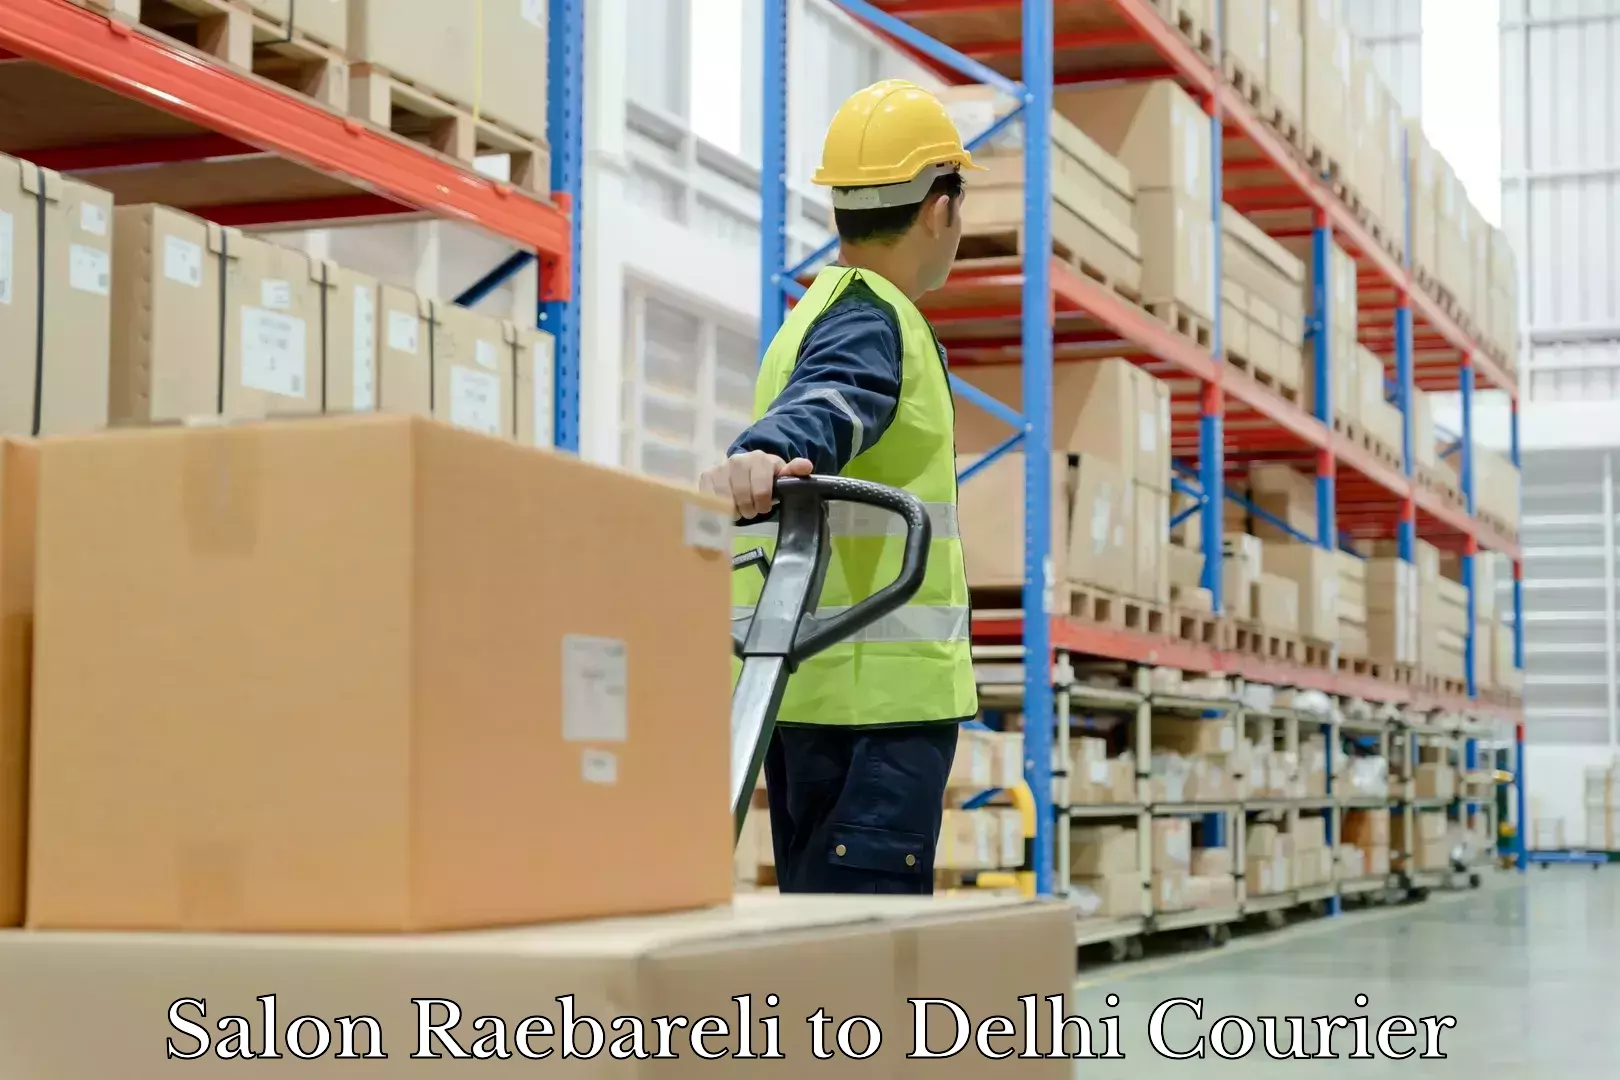 Luggage delivery providers Salon Raebareli to Jamia Millia Islamia New Delhi